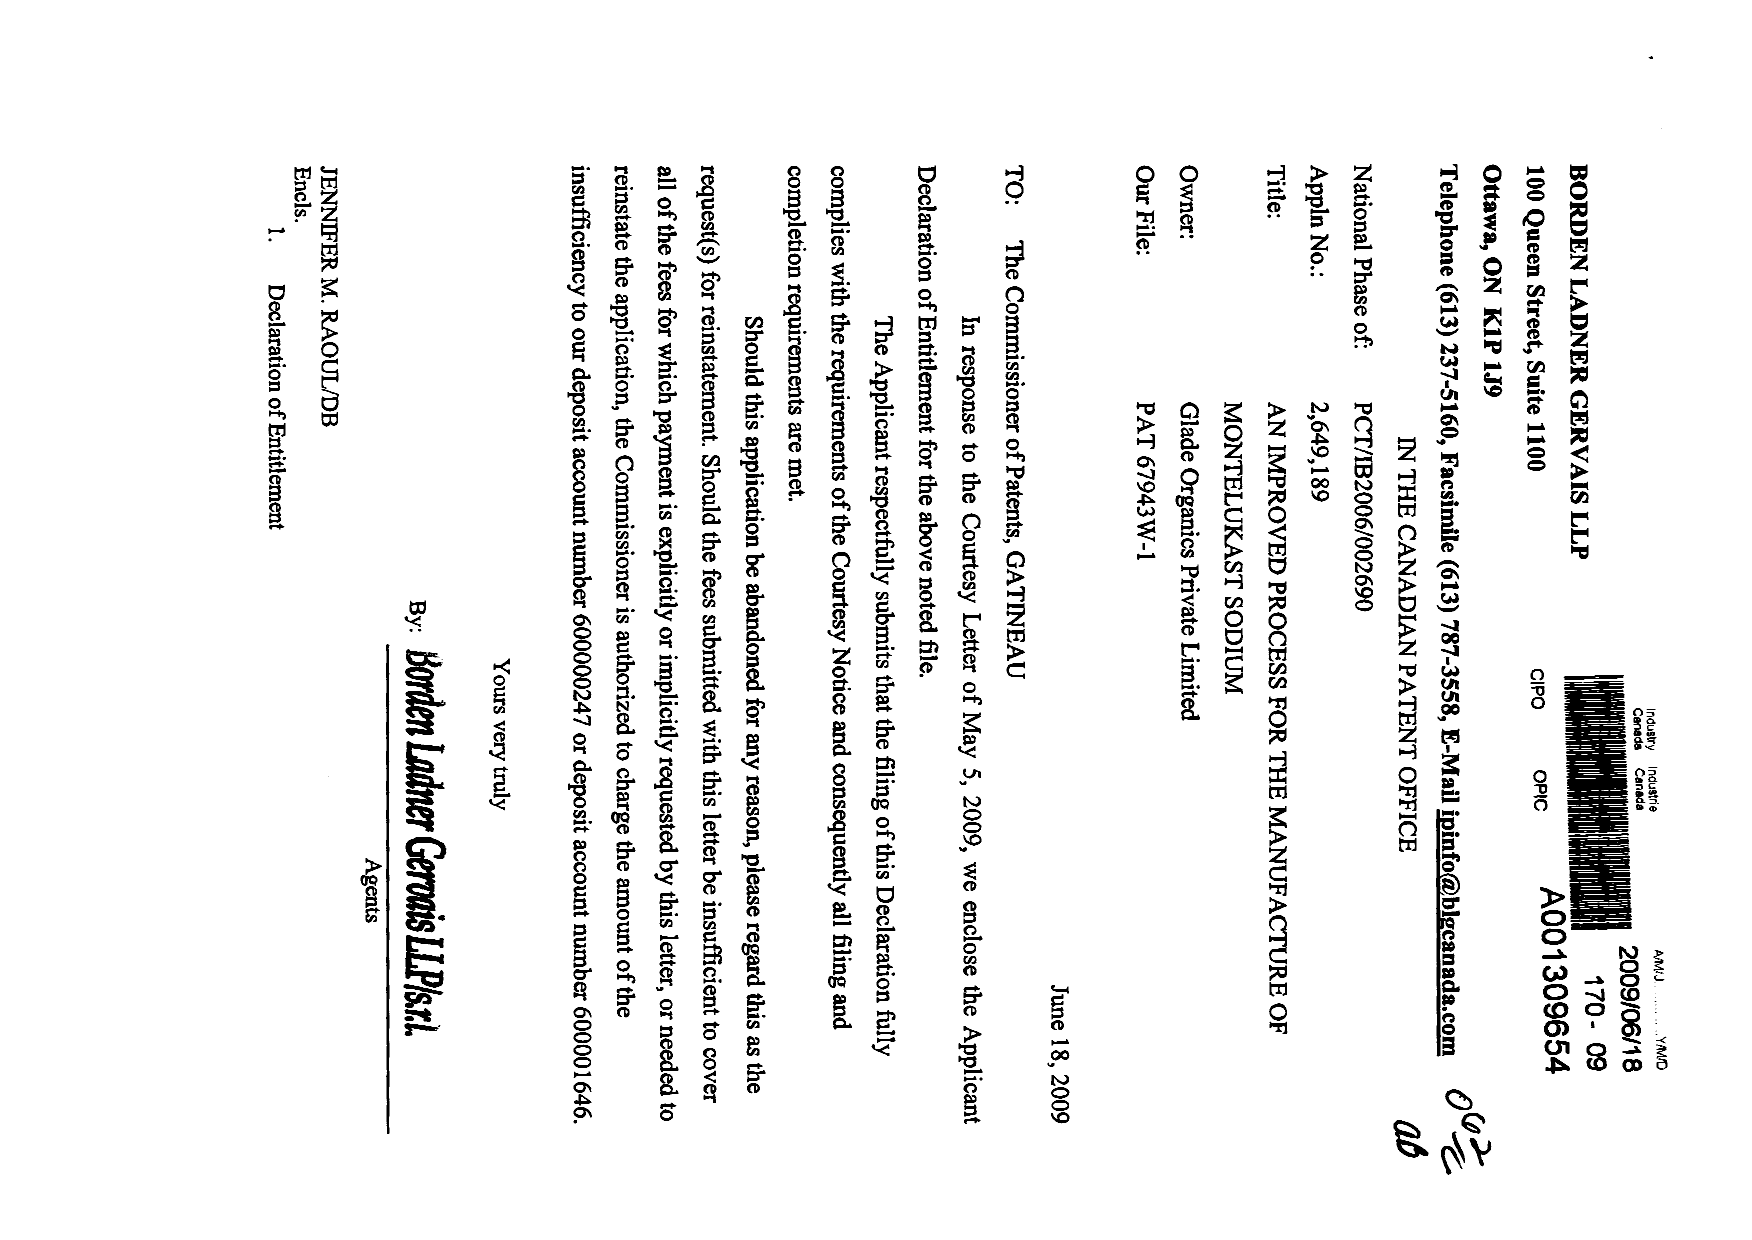 Document de brevet canadien 2649189. Correspondance 20090618. Image 1 de 2